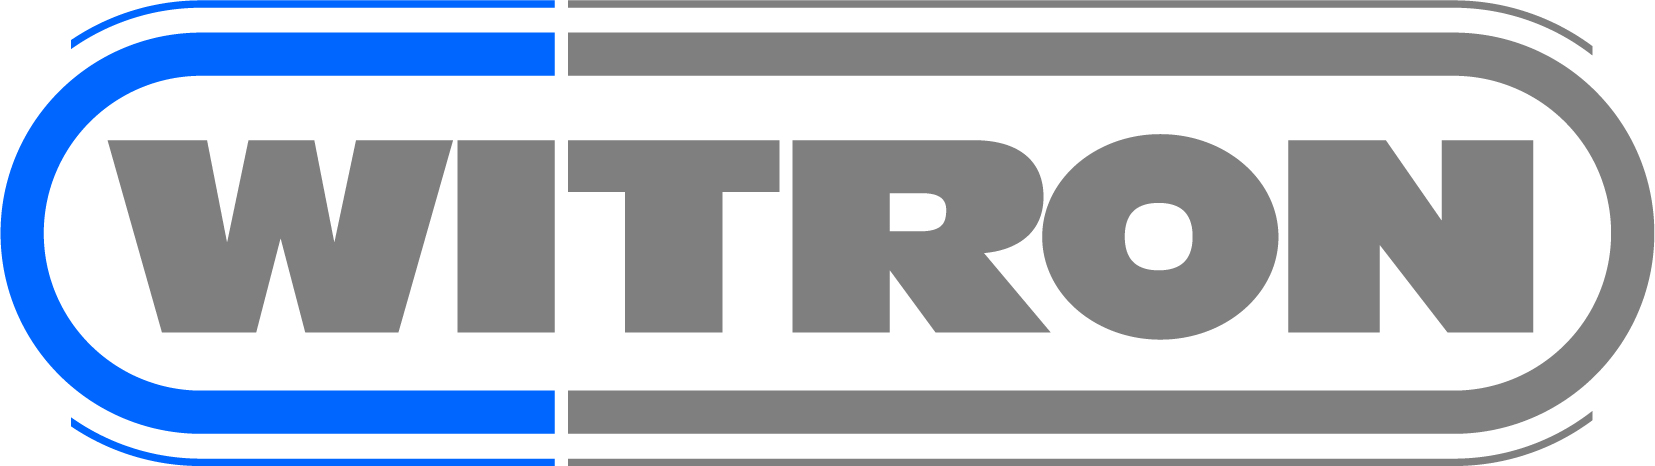 Official Witron logo.jpg